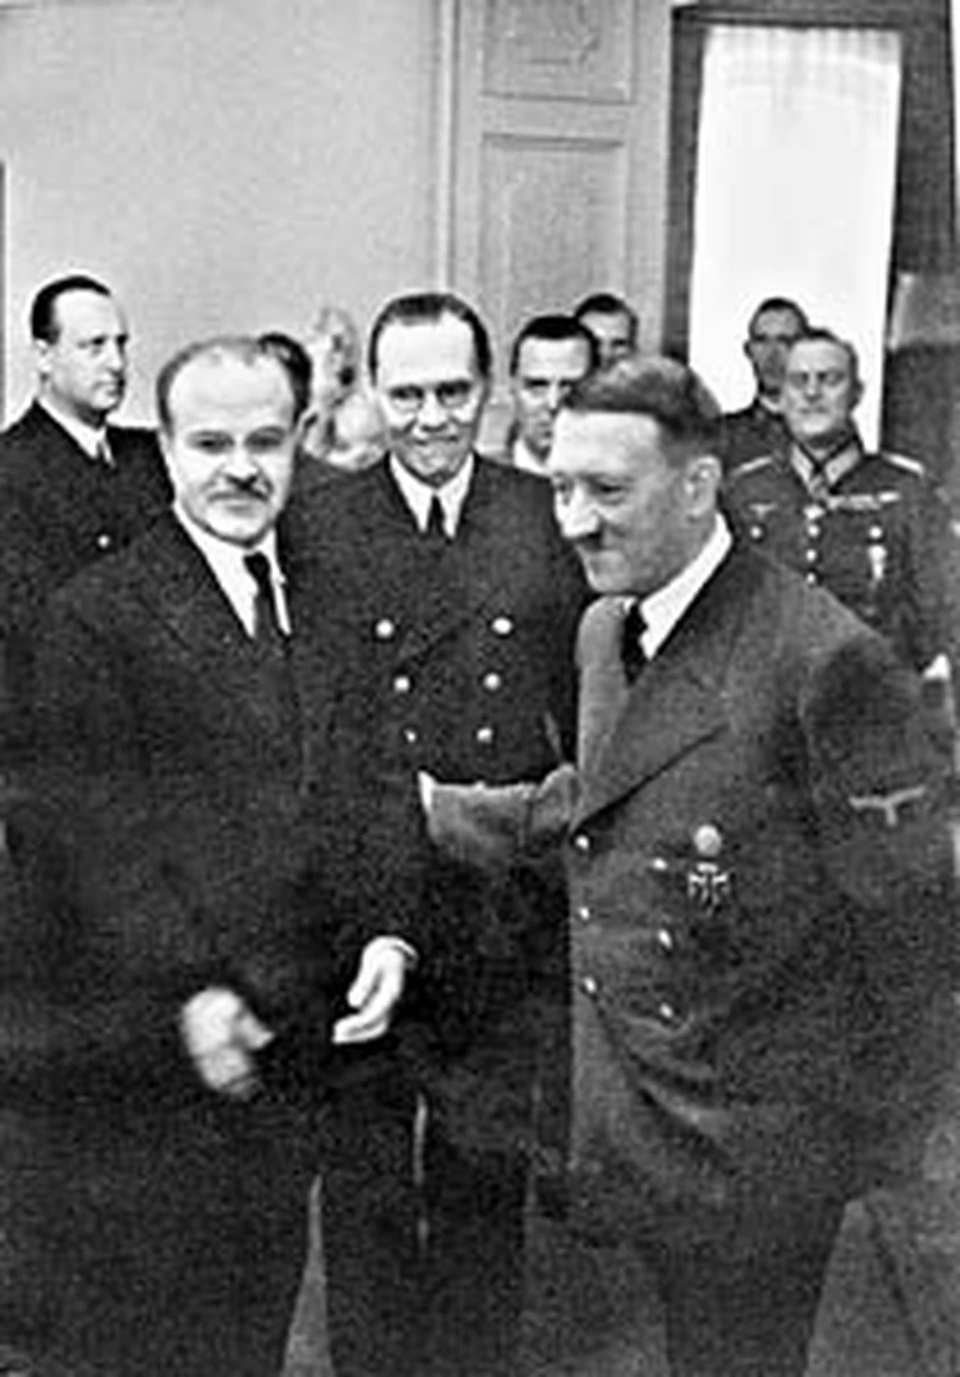 Вячеслав Молотов (на снимке слева)  на встрече с Адольфом Гитлером. Берлин, ноябрь 1940-го. До нападения Германии на Советский Союз остается семь месяцев...